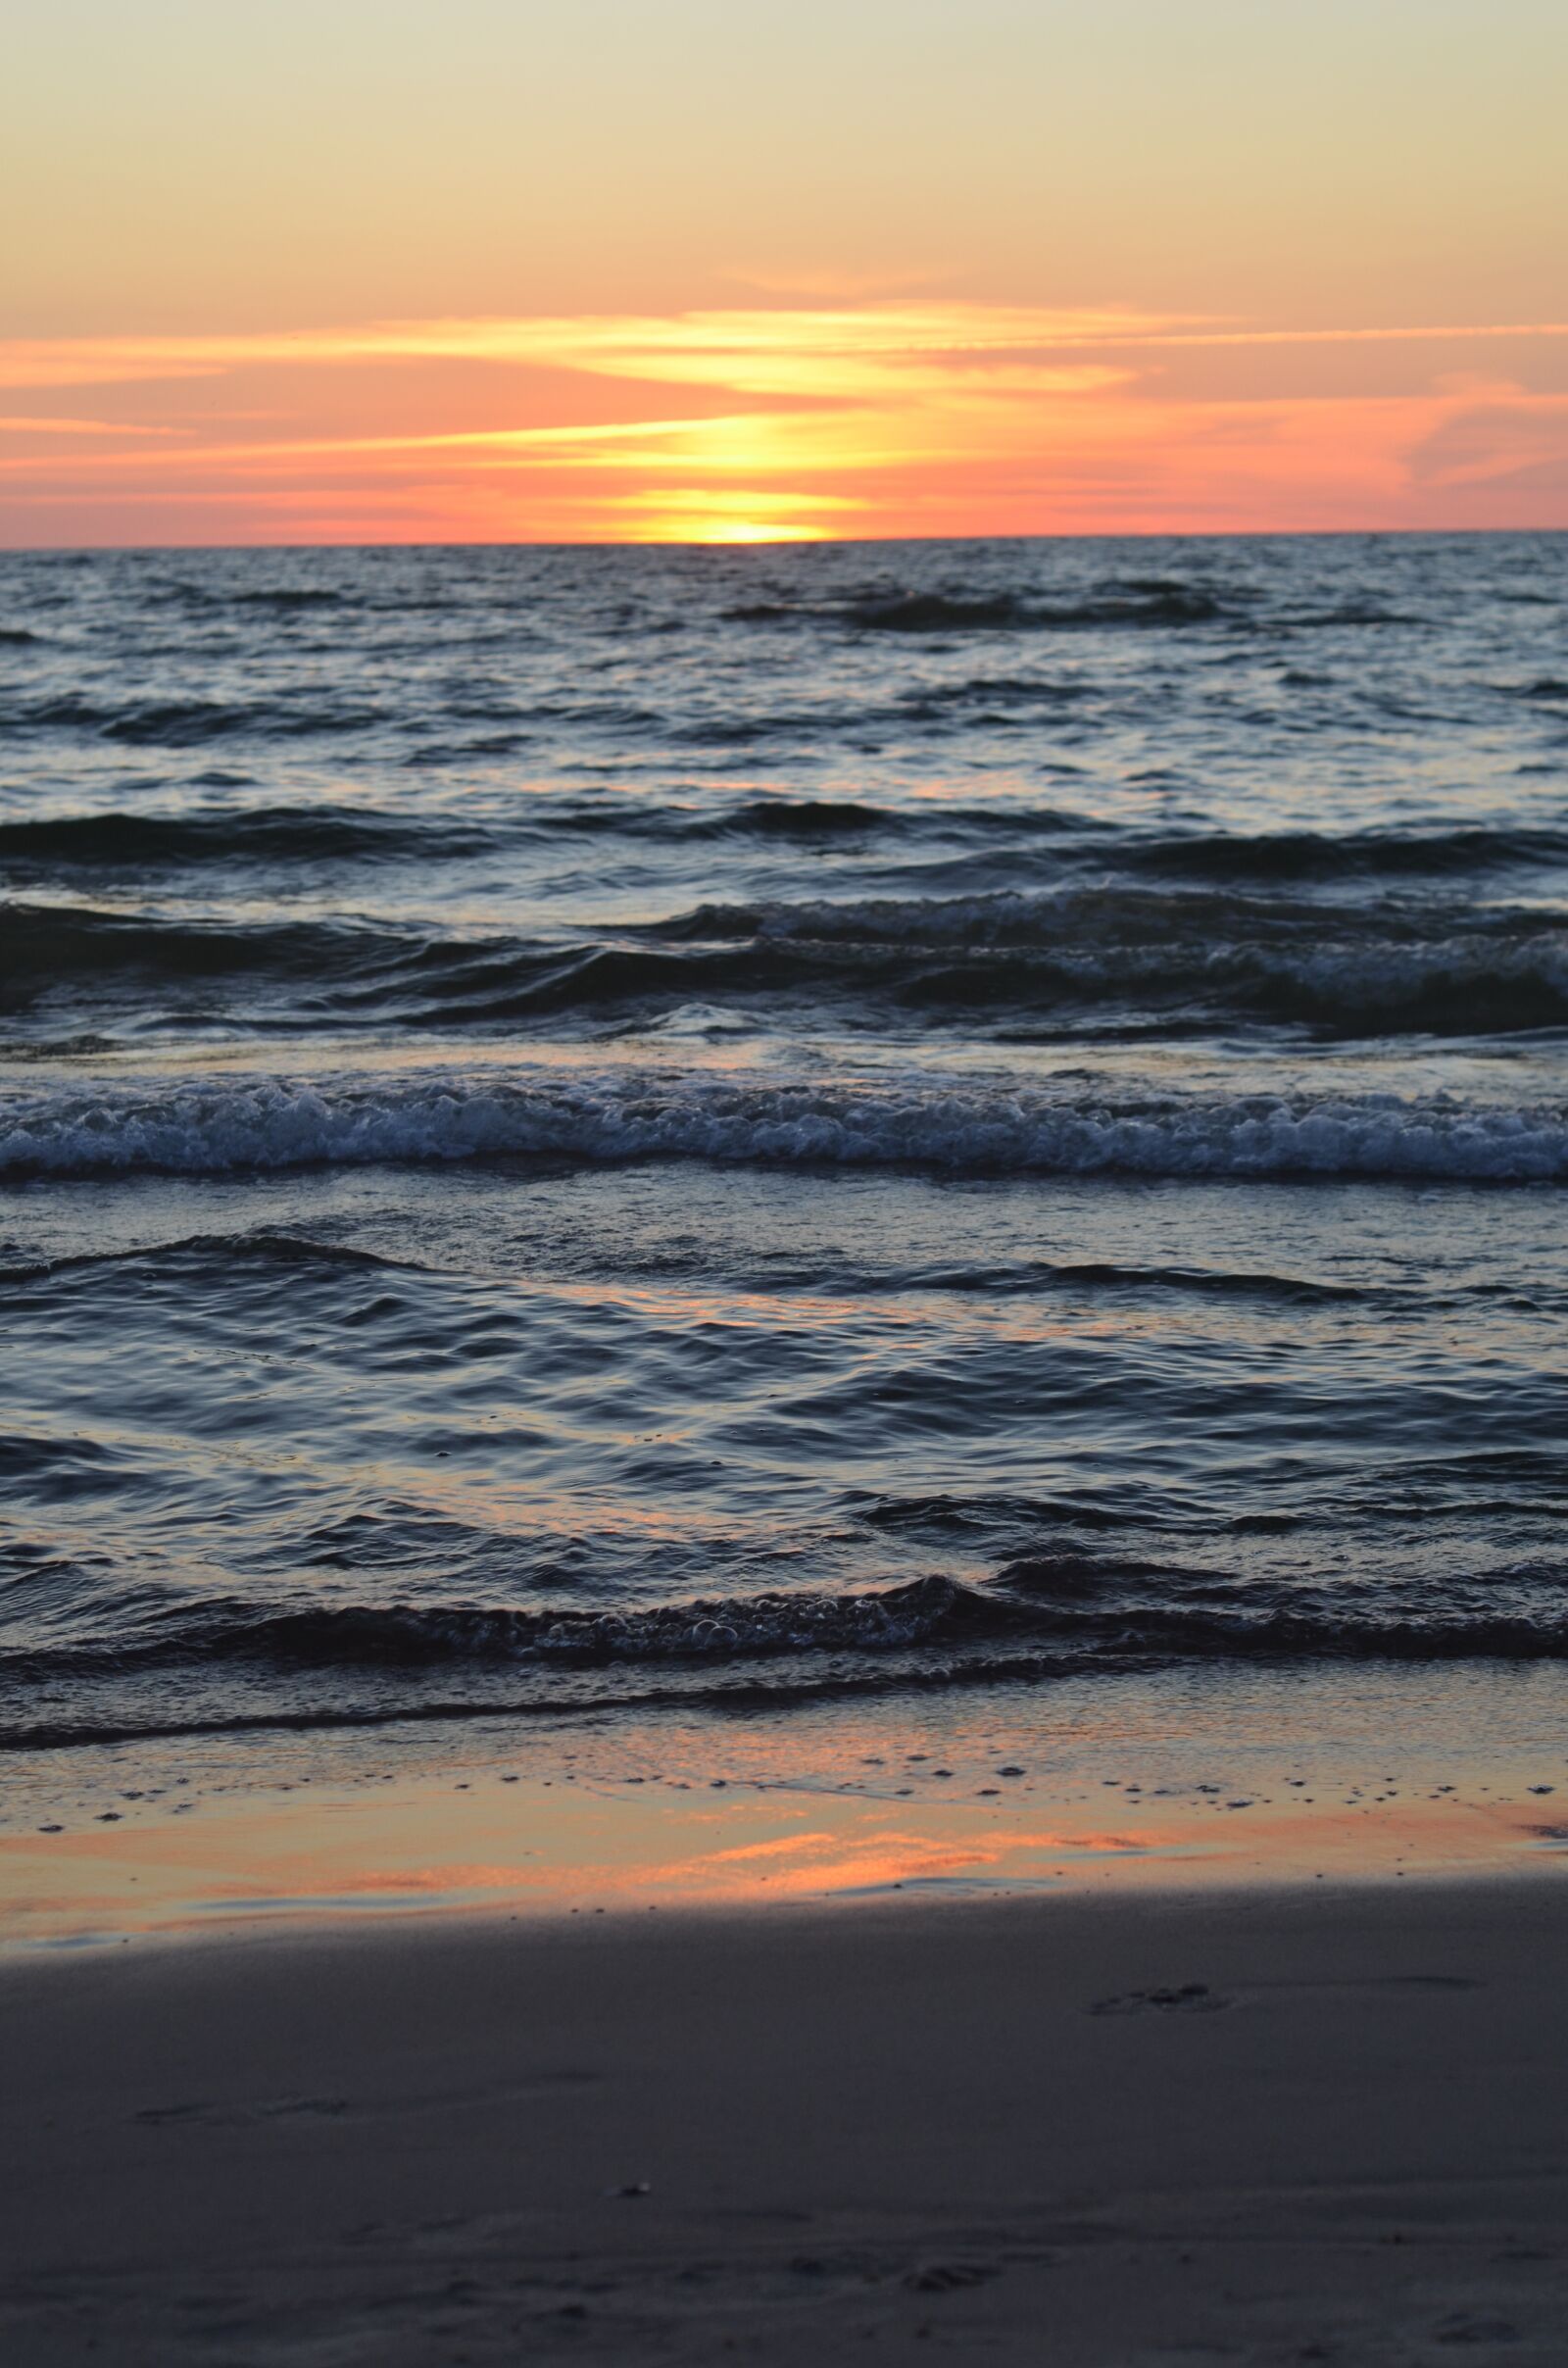 Nikon D7000 sample photo. Sea, evening, sunset photography